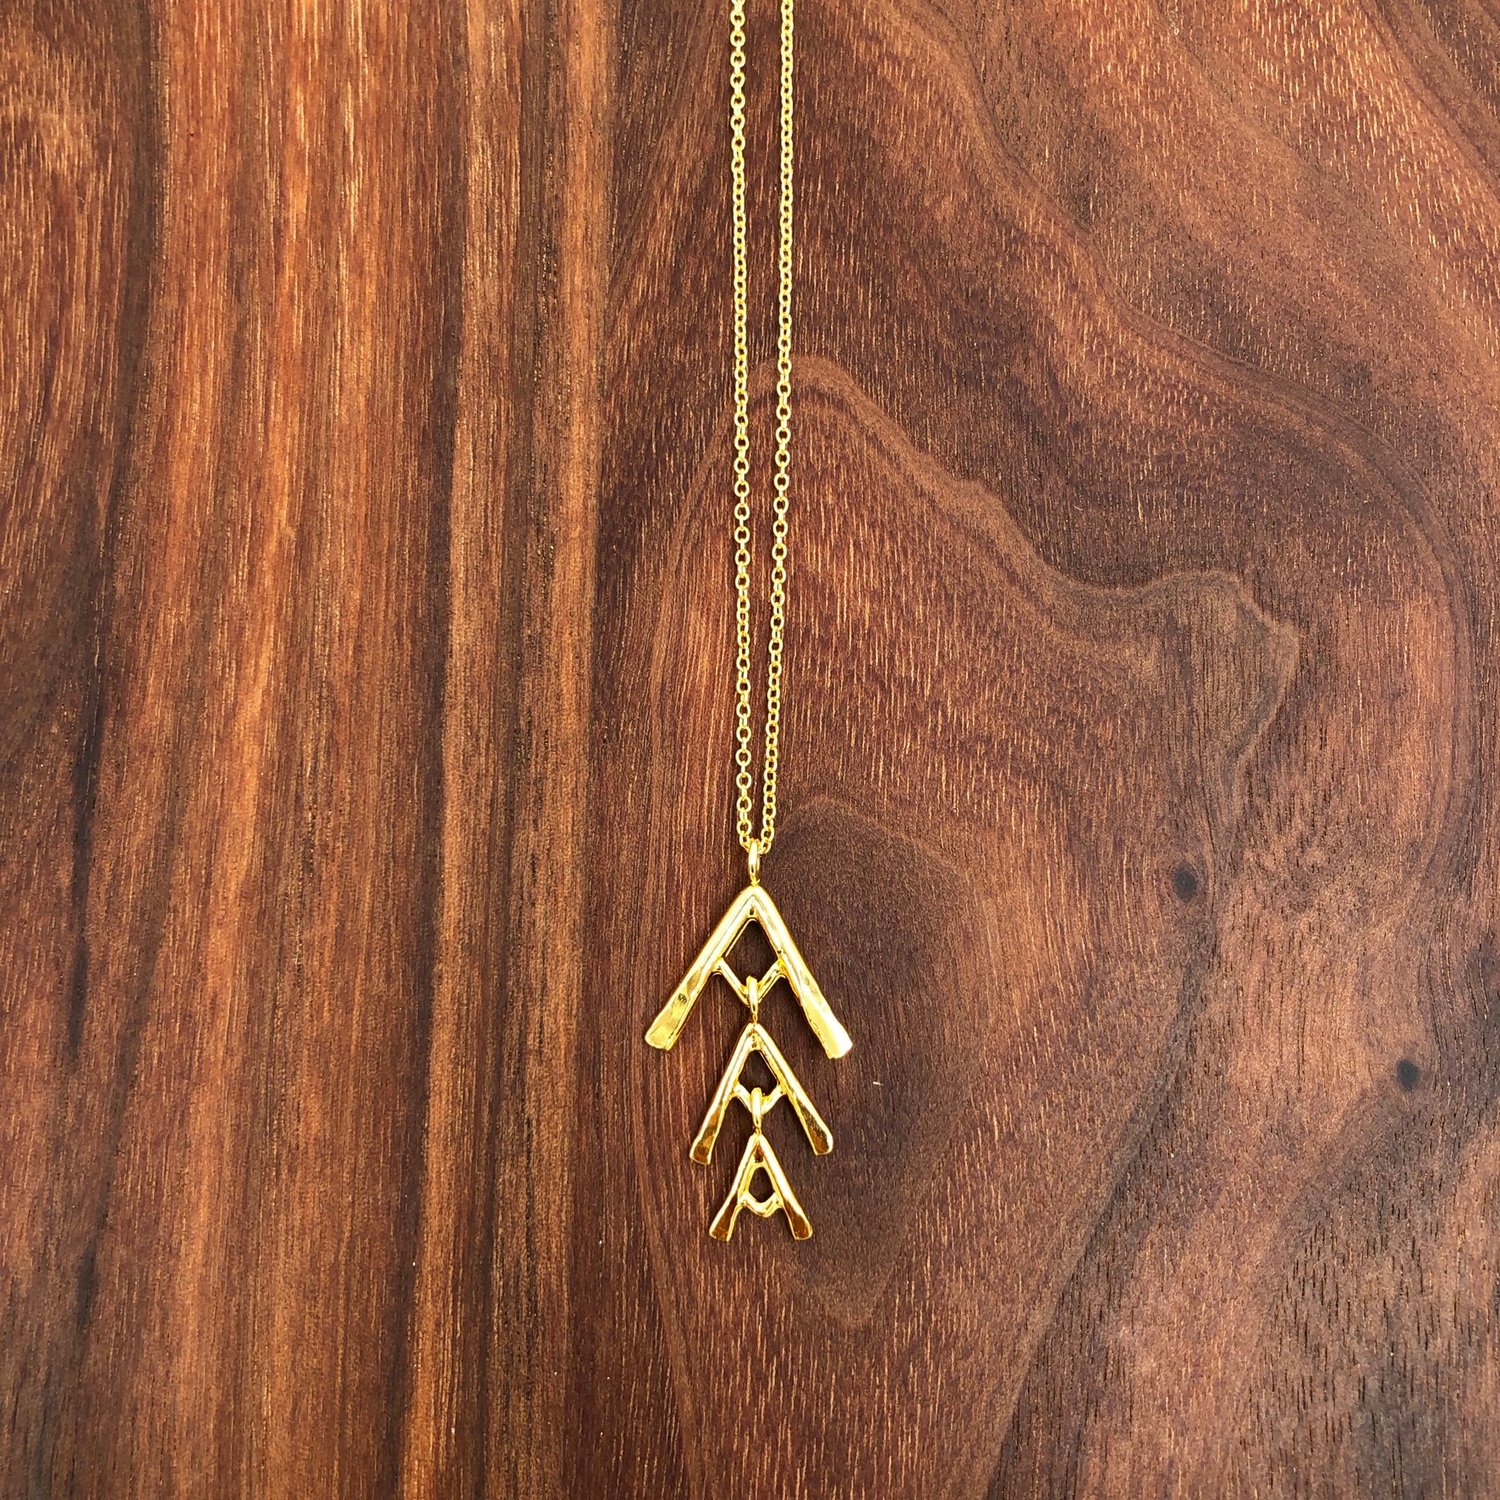 Image of fishbone necklace